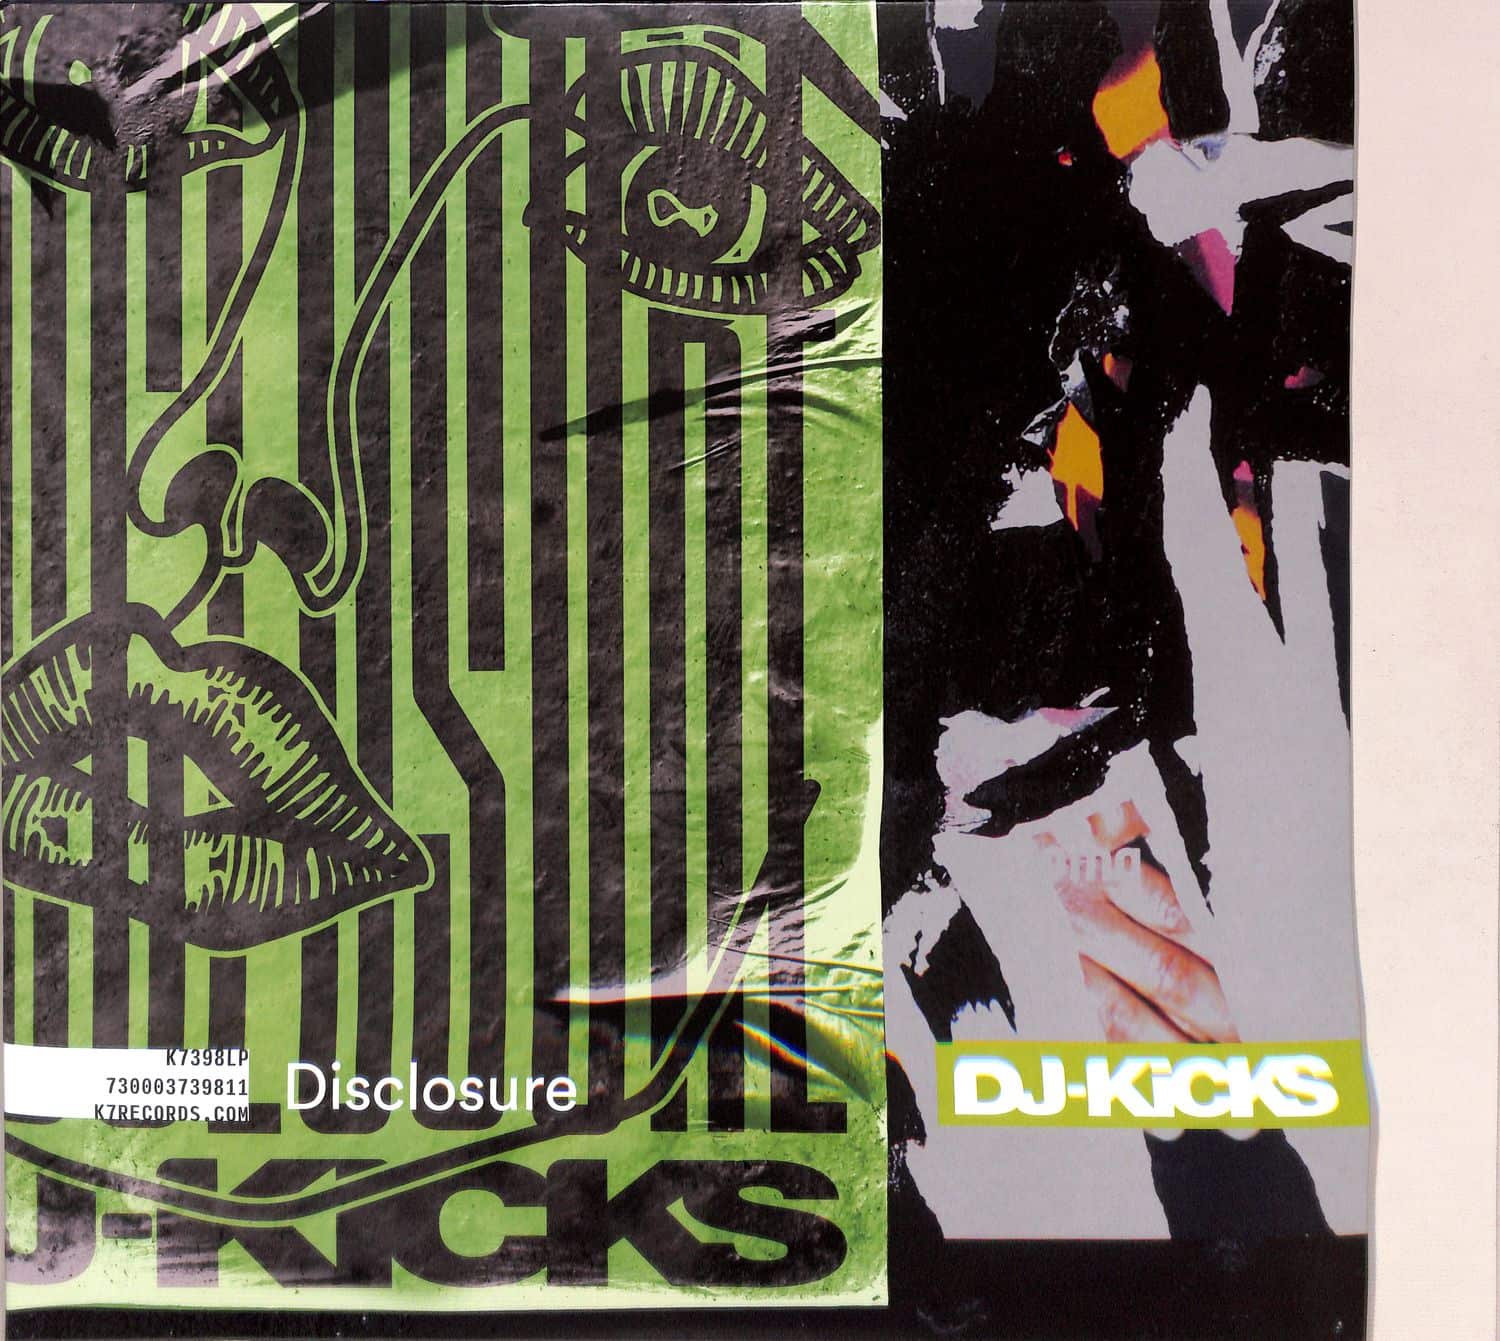 Disclosure - DJ-KICKS 